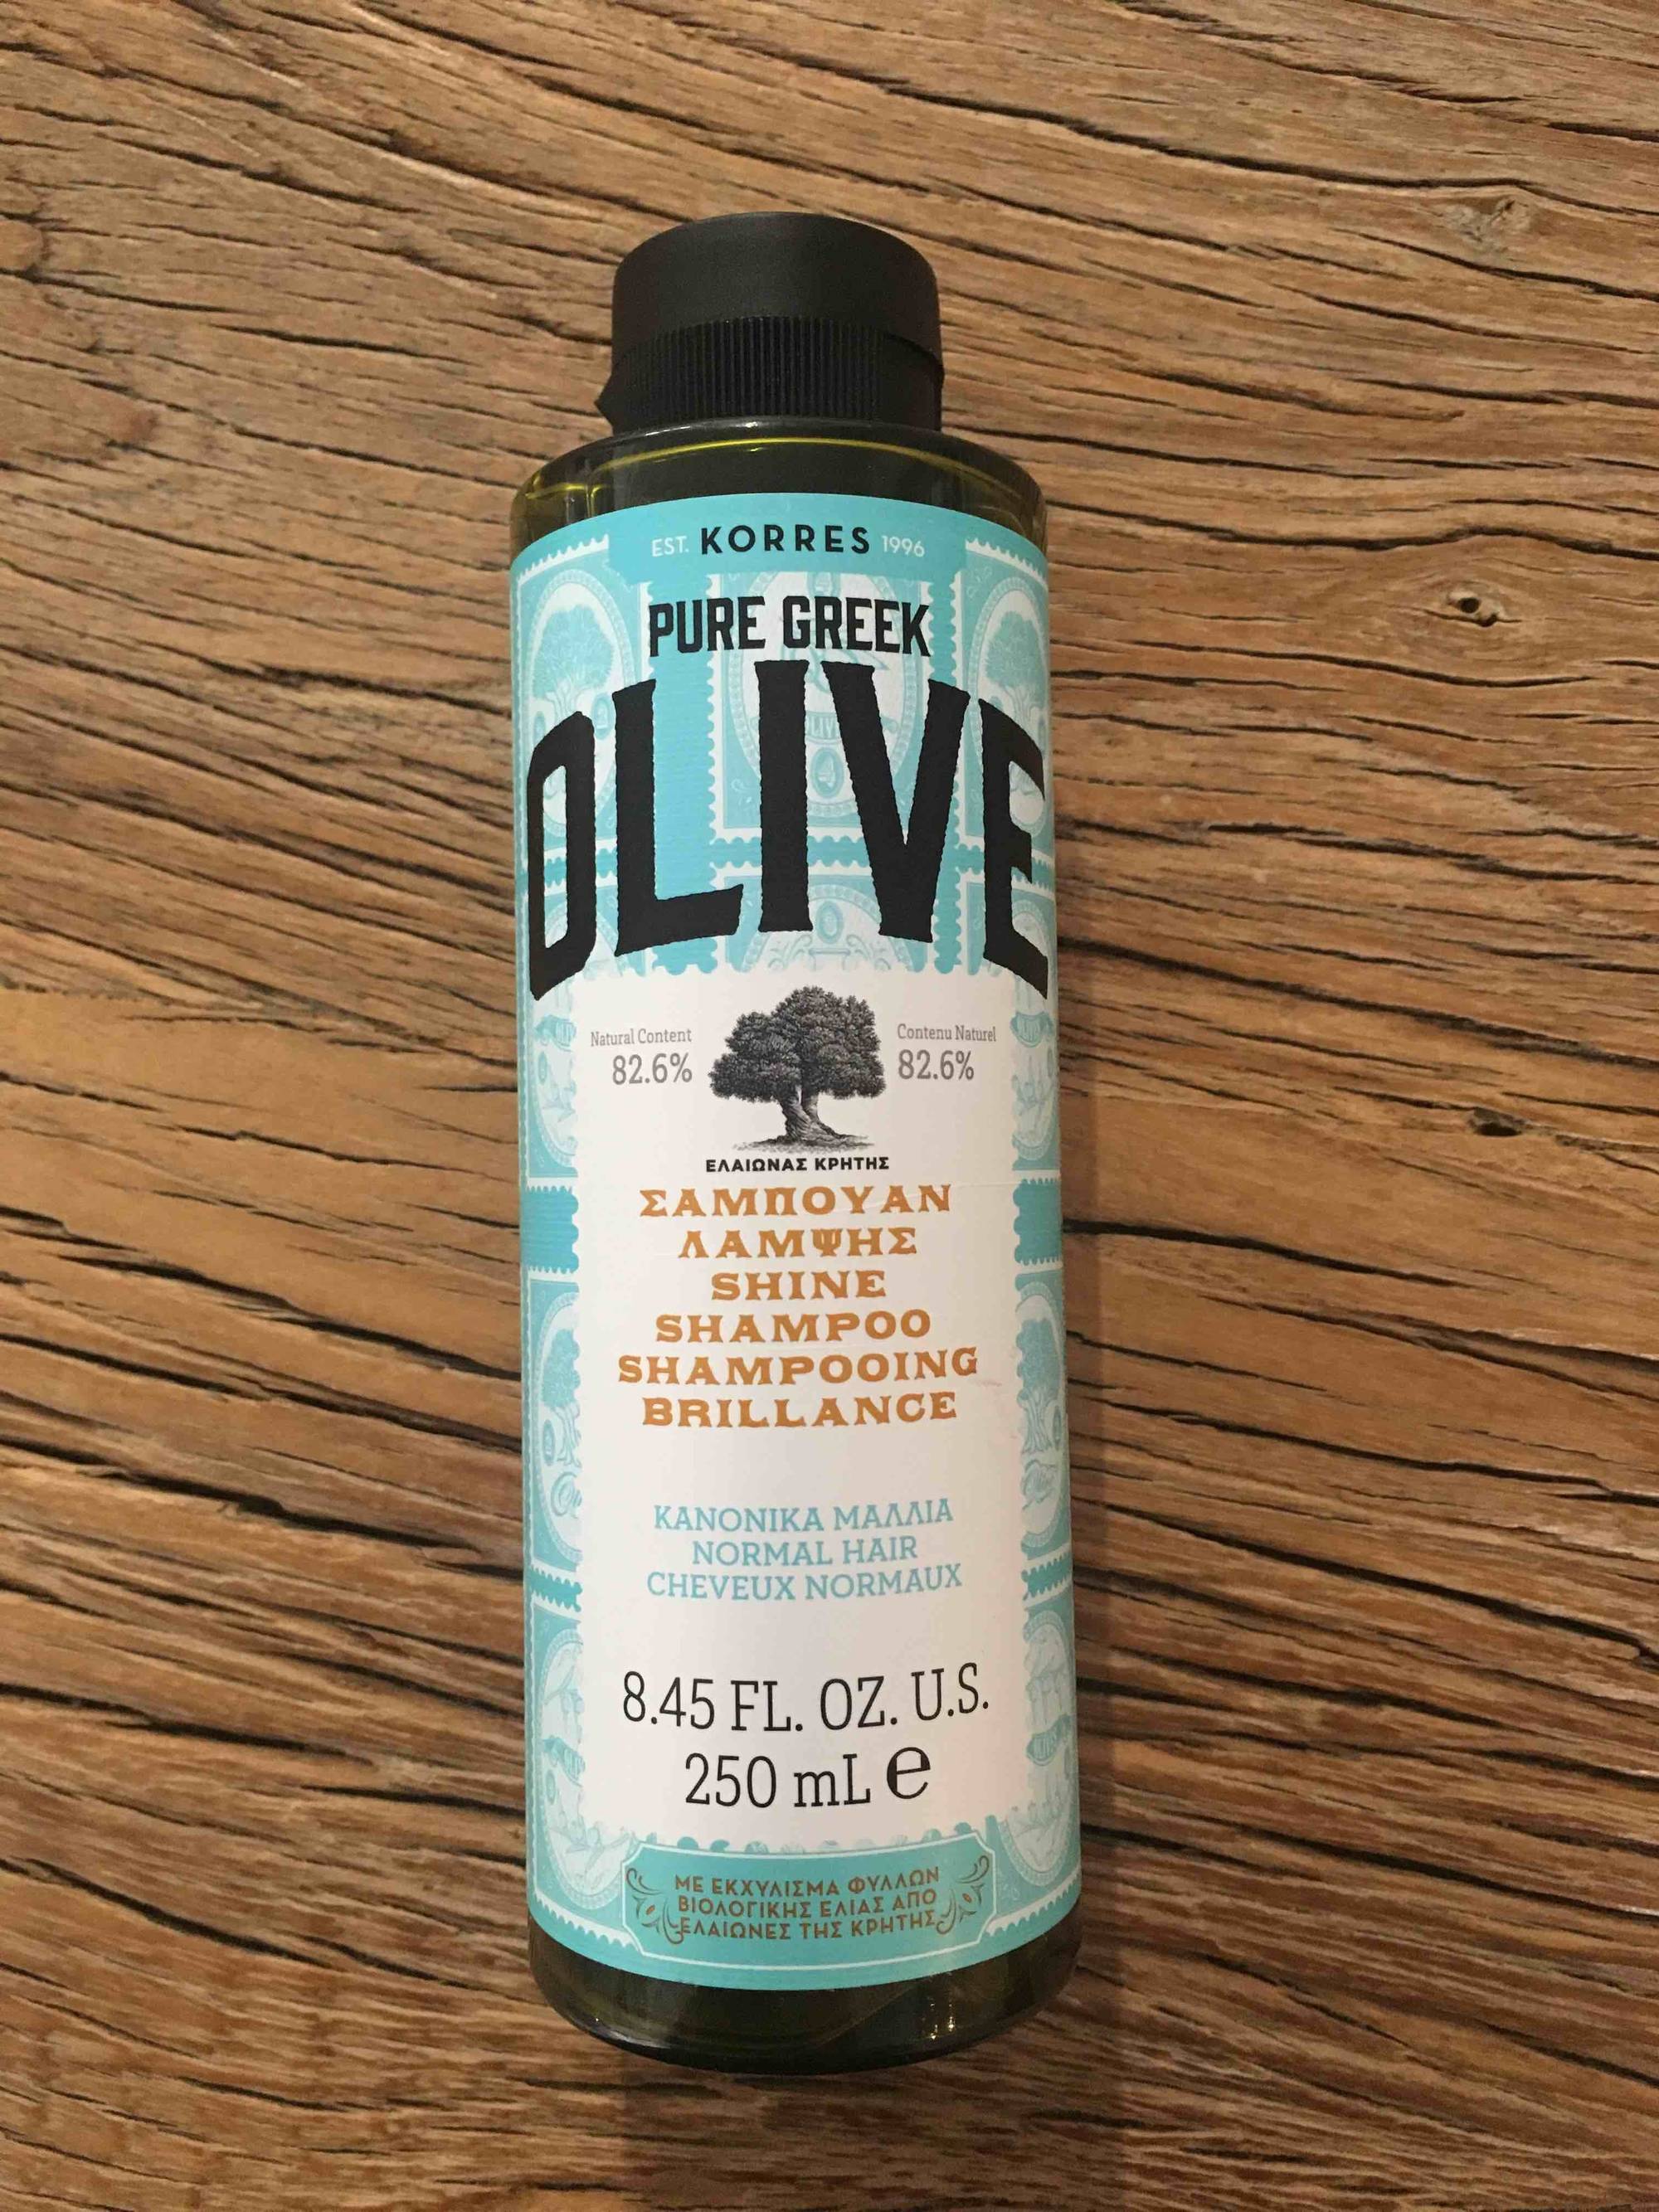 KORRES - Pure greek olive - Shampooing brillance